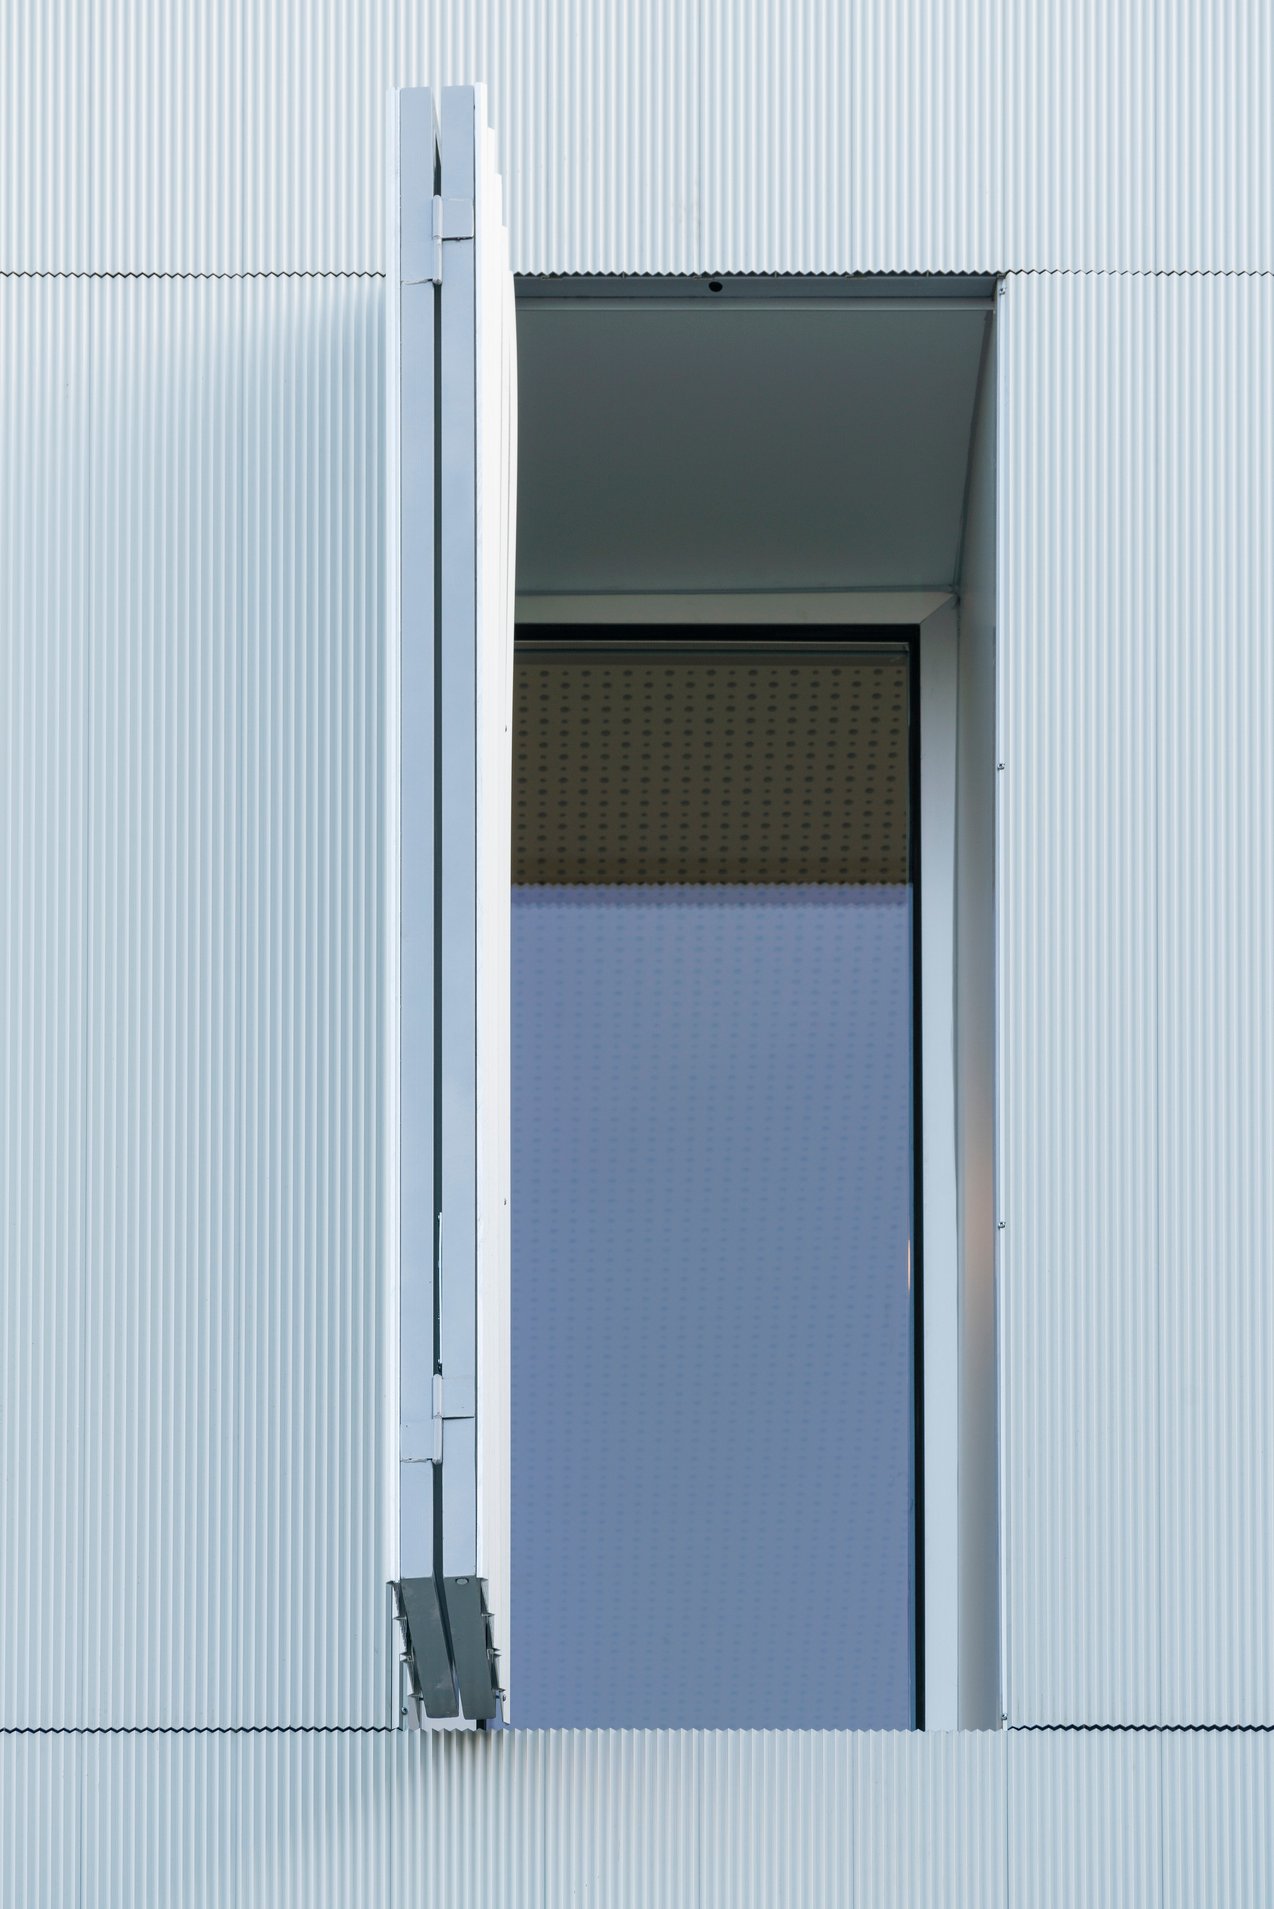 Servicios profesionales de la rehabilitación de fachadas ventiladas en aluminio